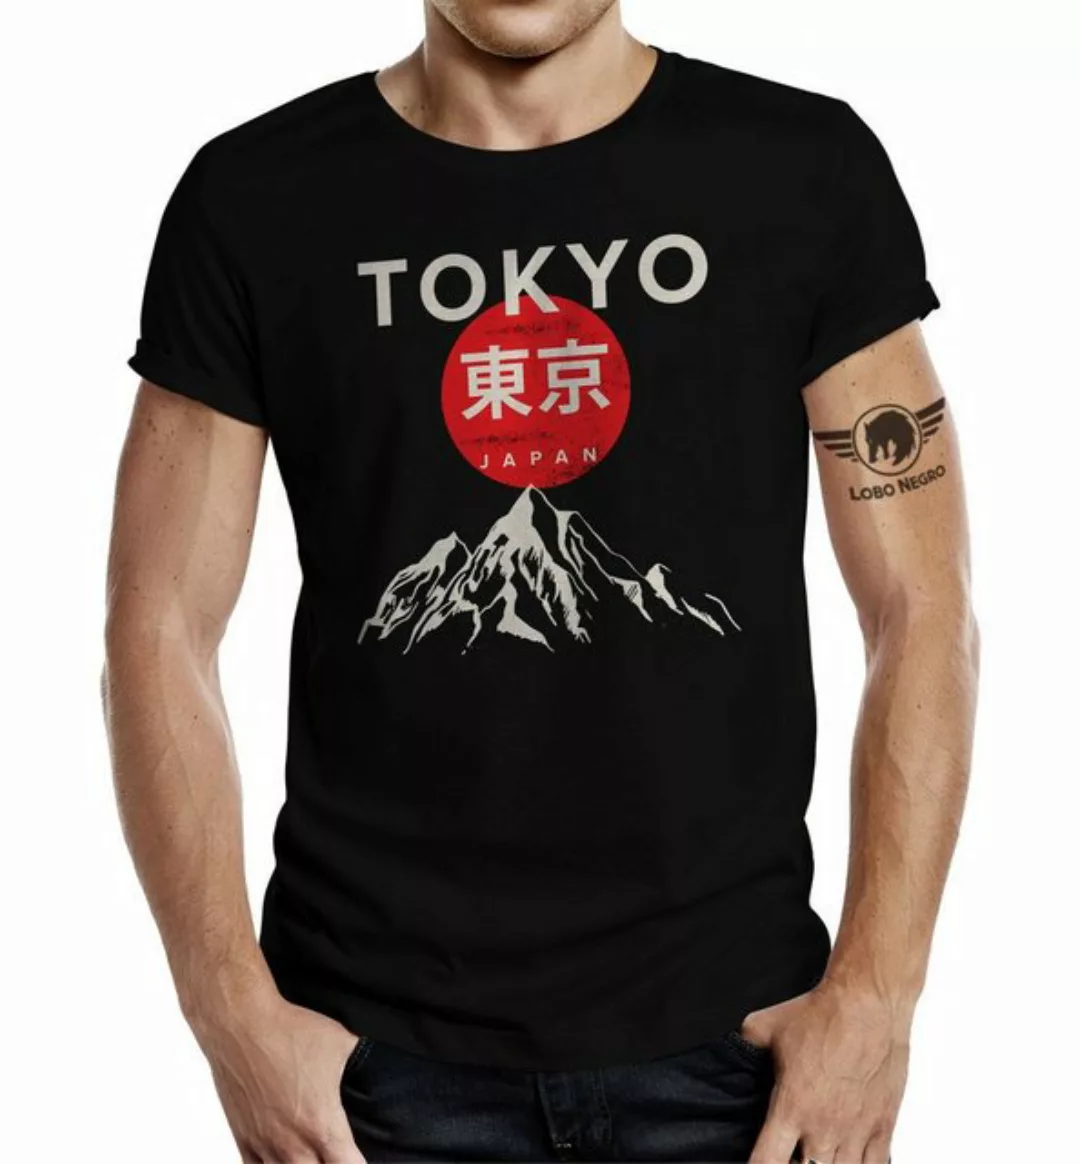 LOBO NEGRO® T-Shirt für Japan Samurai Tokio Kampfsport Fans: Tokyo günstig online kaufen